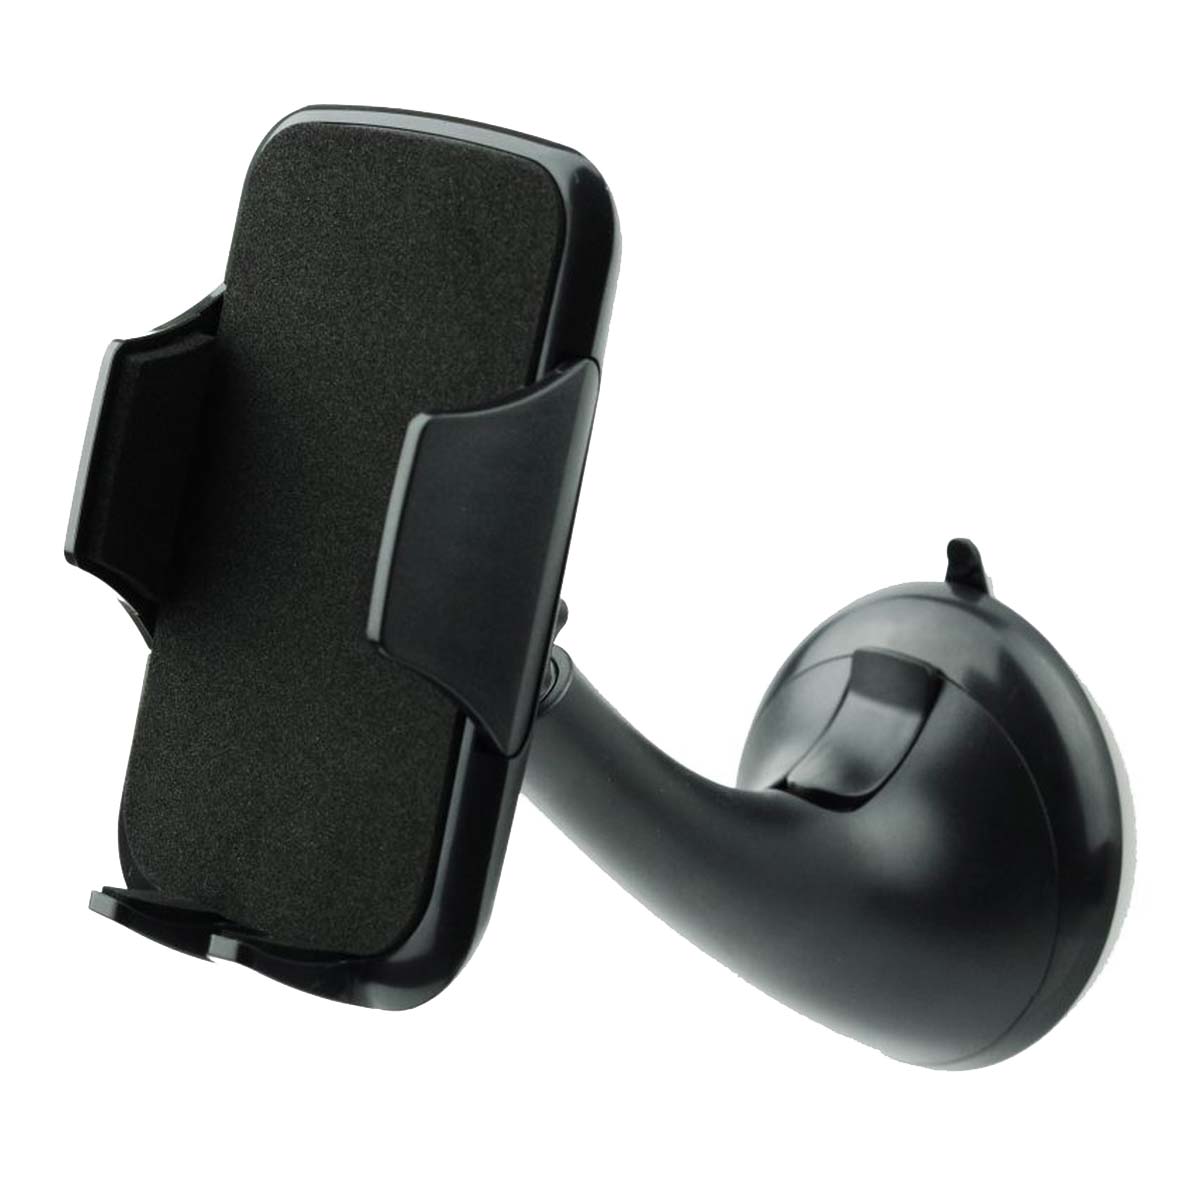 Armaturenbrett-Windschutzscheibenhalterung, Handyhalterung für die Windschutzscheibe des Armaturenbretts im Auto